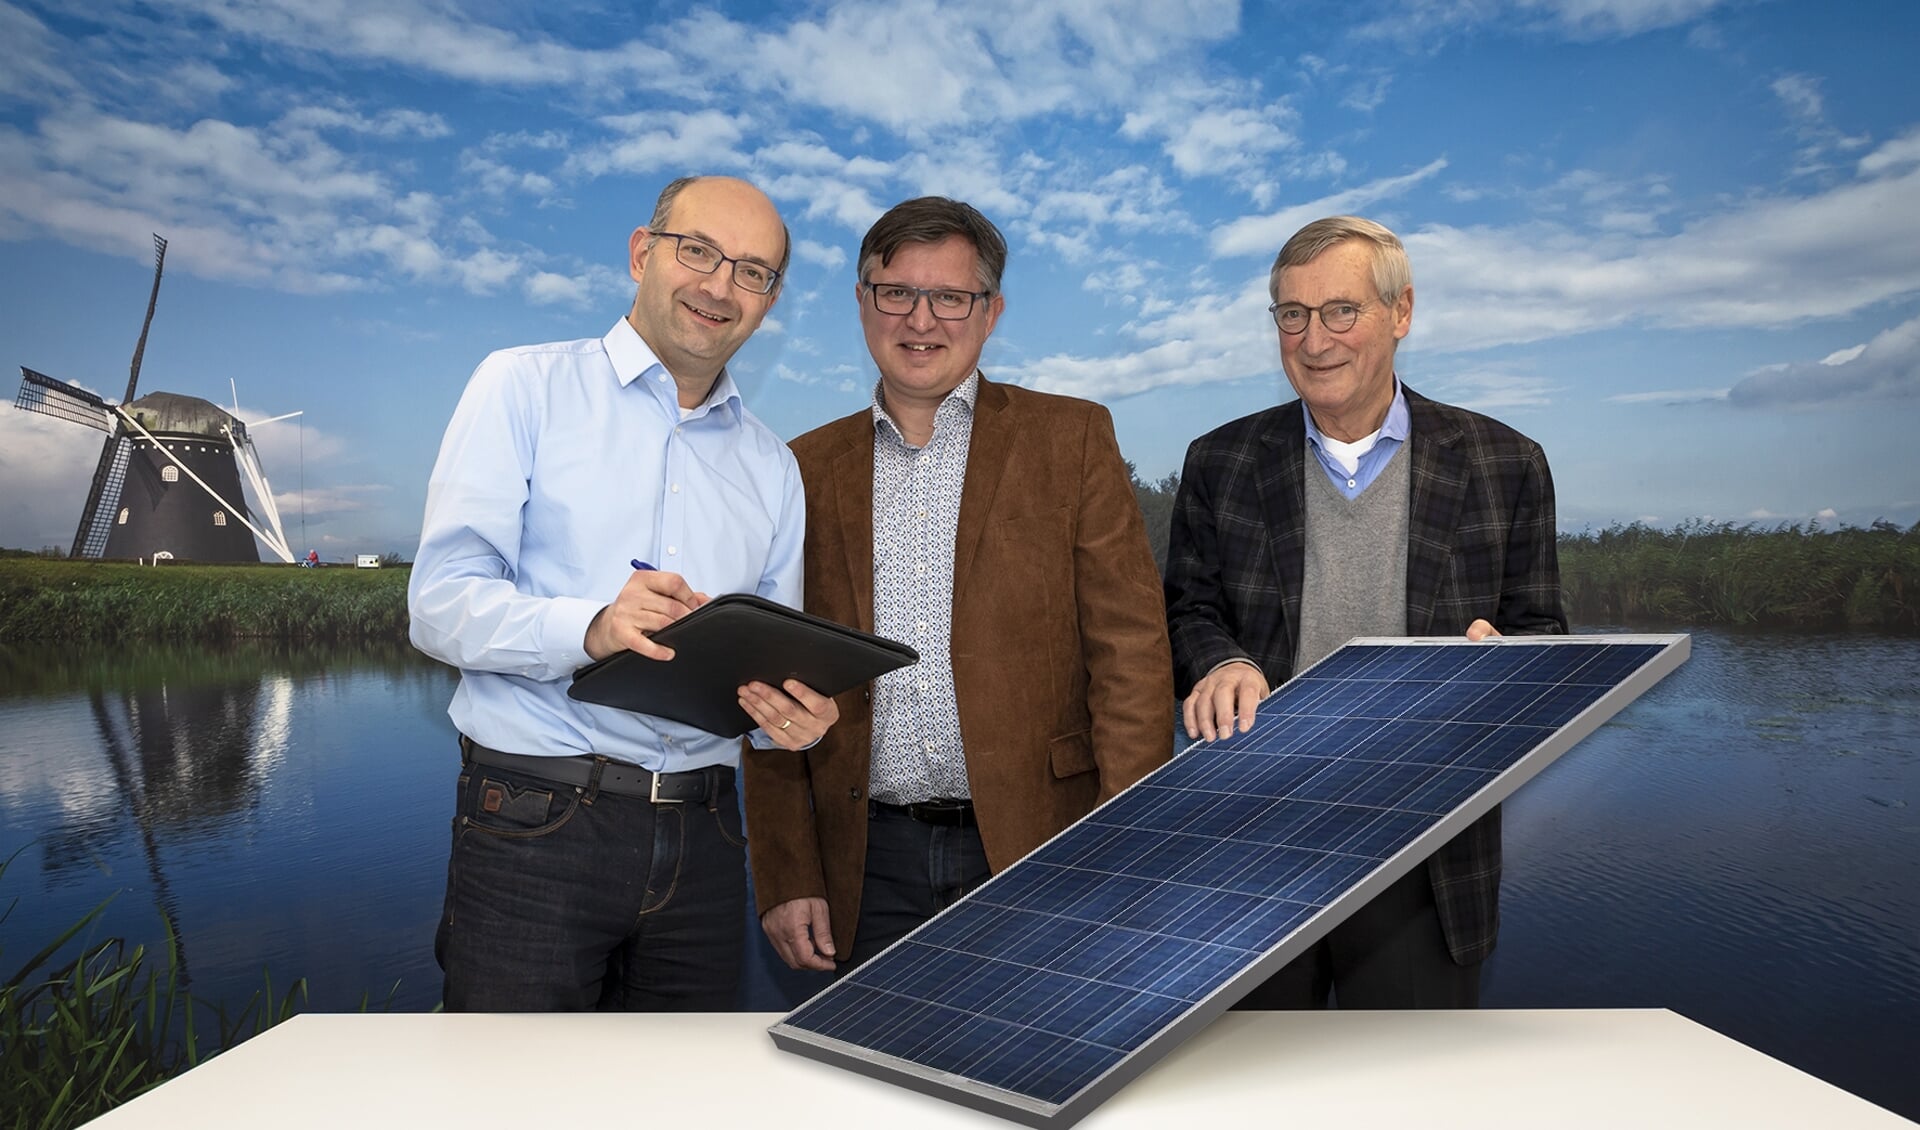 René Lambregts (links) van Waterschap Brabantse Delta tekent de intentieverklaring voor een onderzoek naar de haalbaarheid van een zonneweide op Nieuwveer. Dit onder het toeziend oog van Joop van Hasselt (rechts) van BRES en Ger de Weert (midden) van Stichting Support ONS 2050.